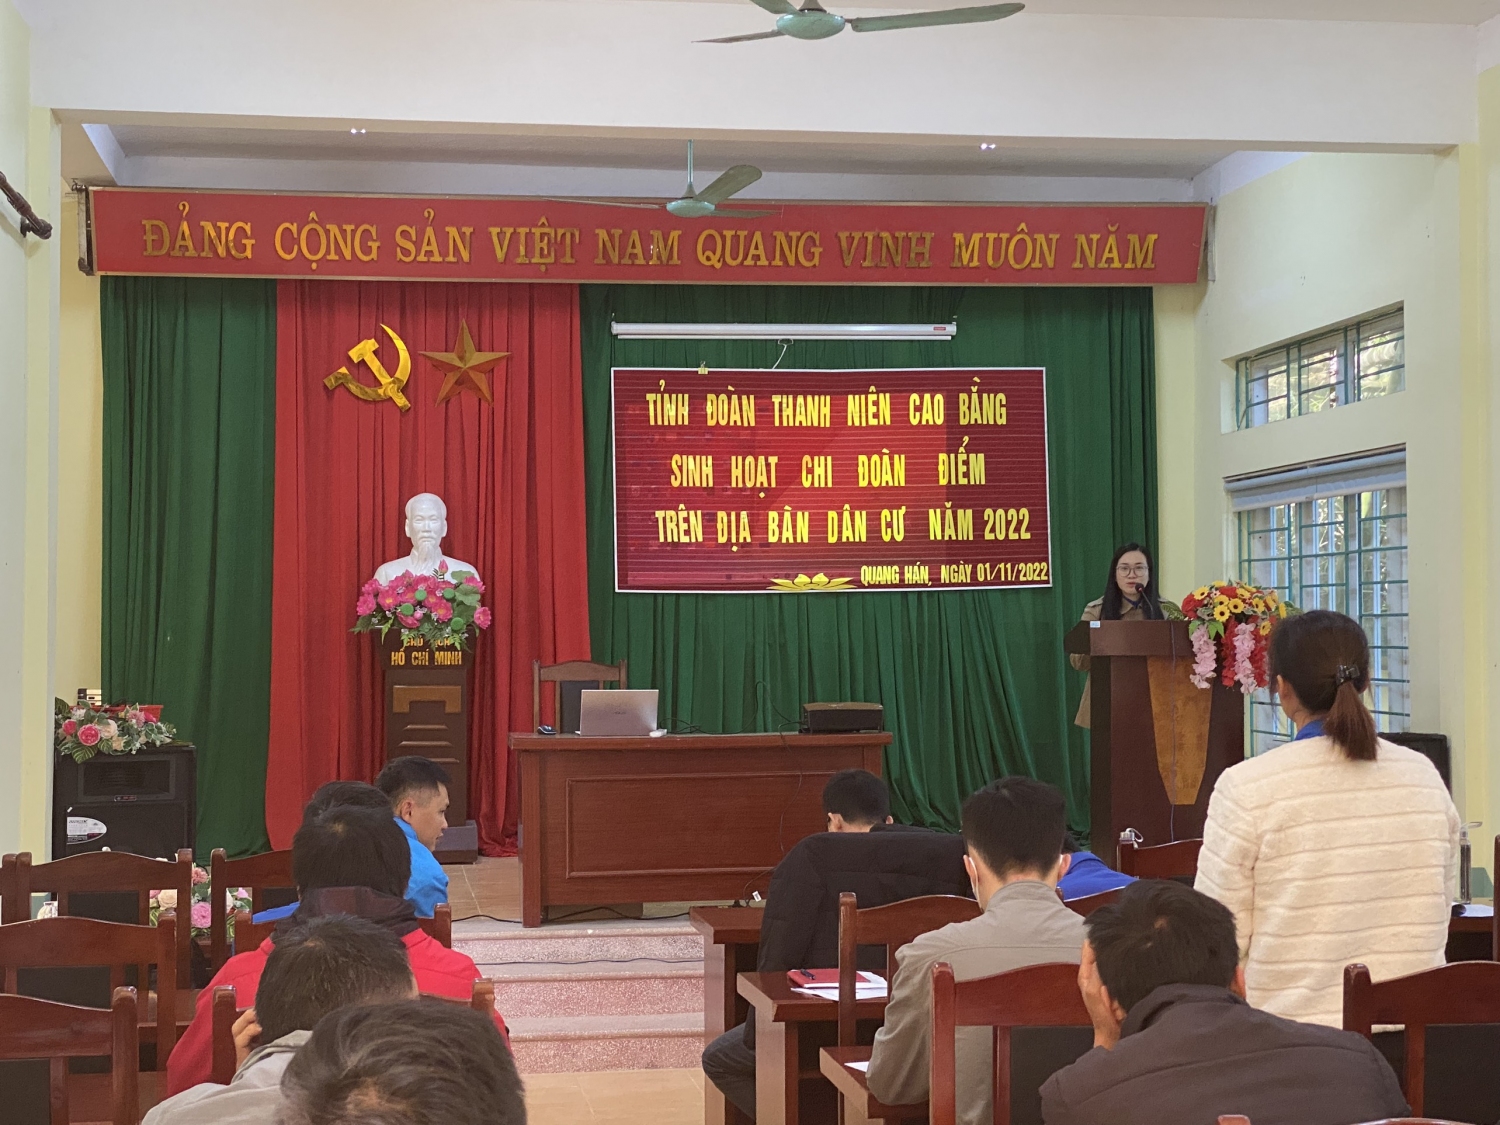 Sinh hoạt Chi đoàn điểm tại xã Quang Hán